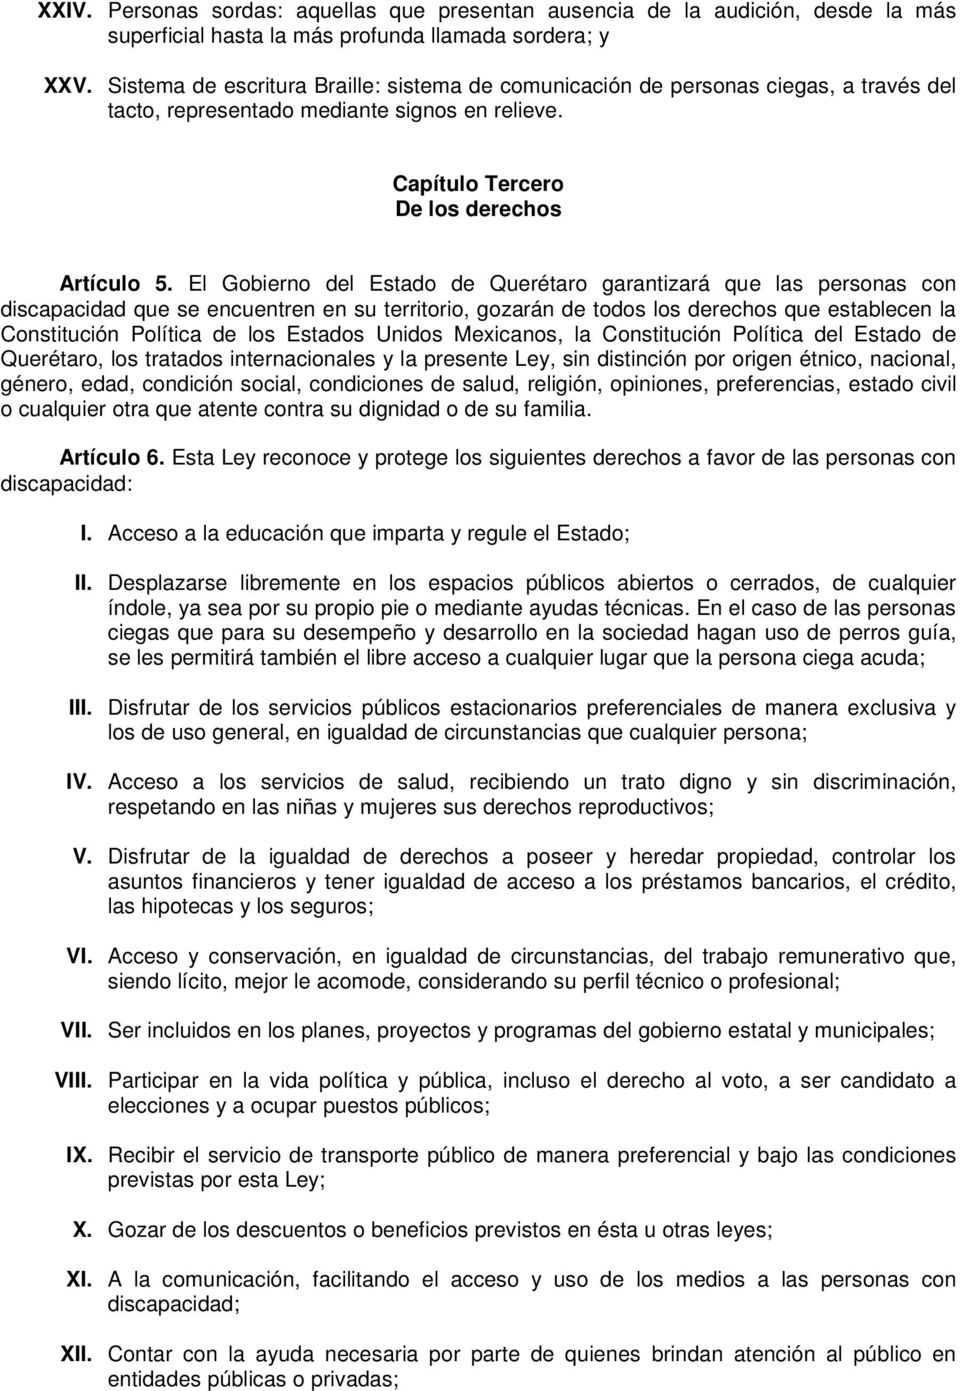 El Gobierno del Estado de Querétaro garantizará que las personas con discapacidad que se encuentren en su territorio, gozarán de todos los derechos que establecen la Constitución Política de los